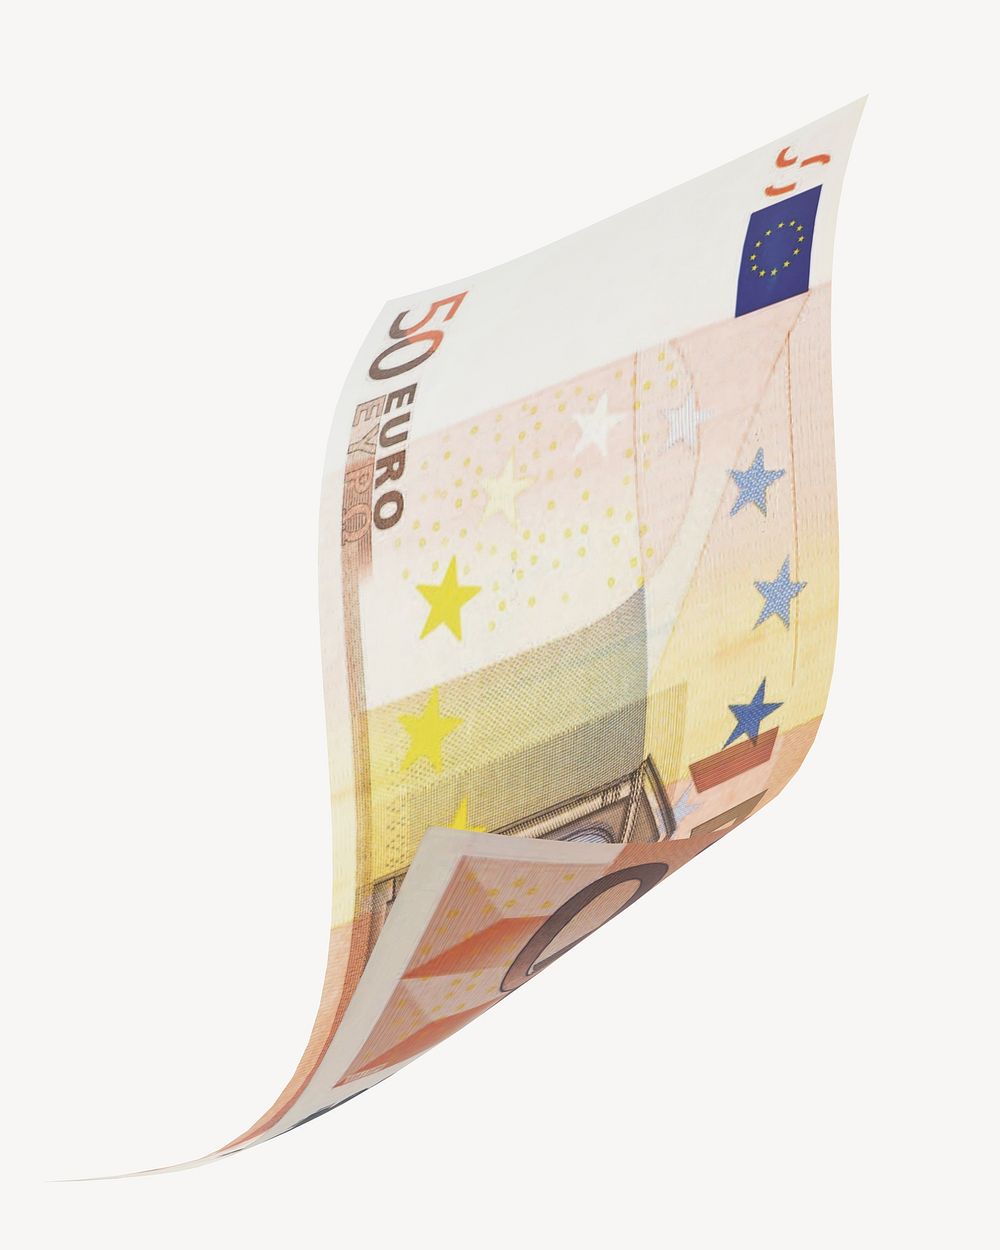 50 Euros bank note